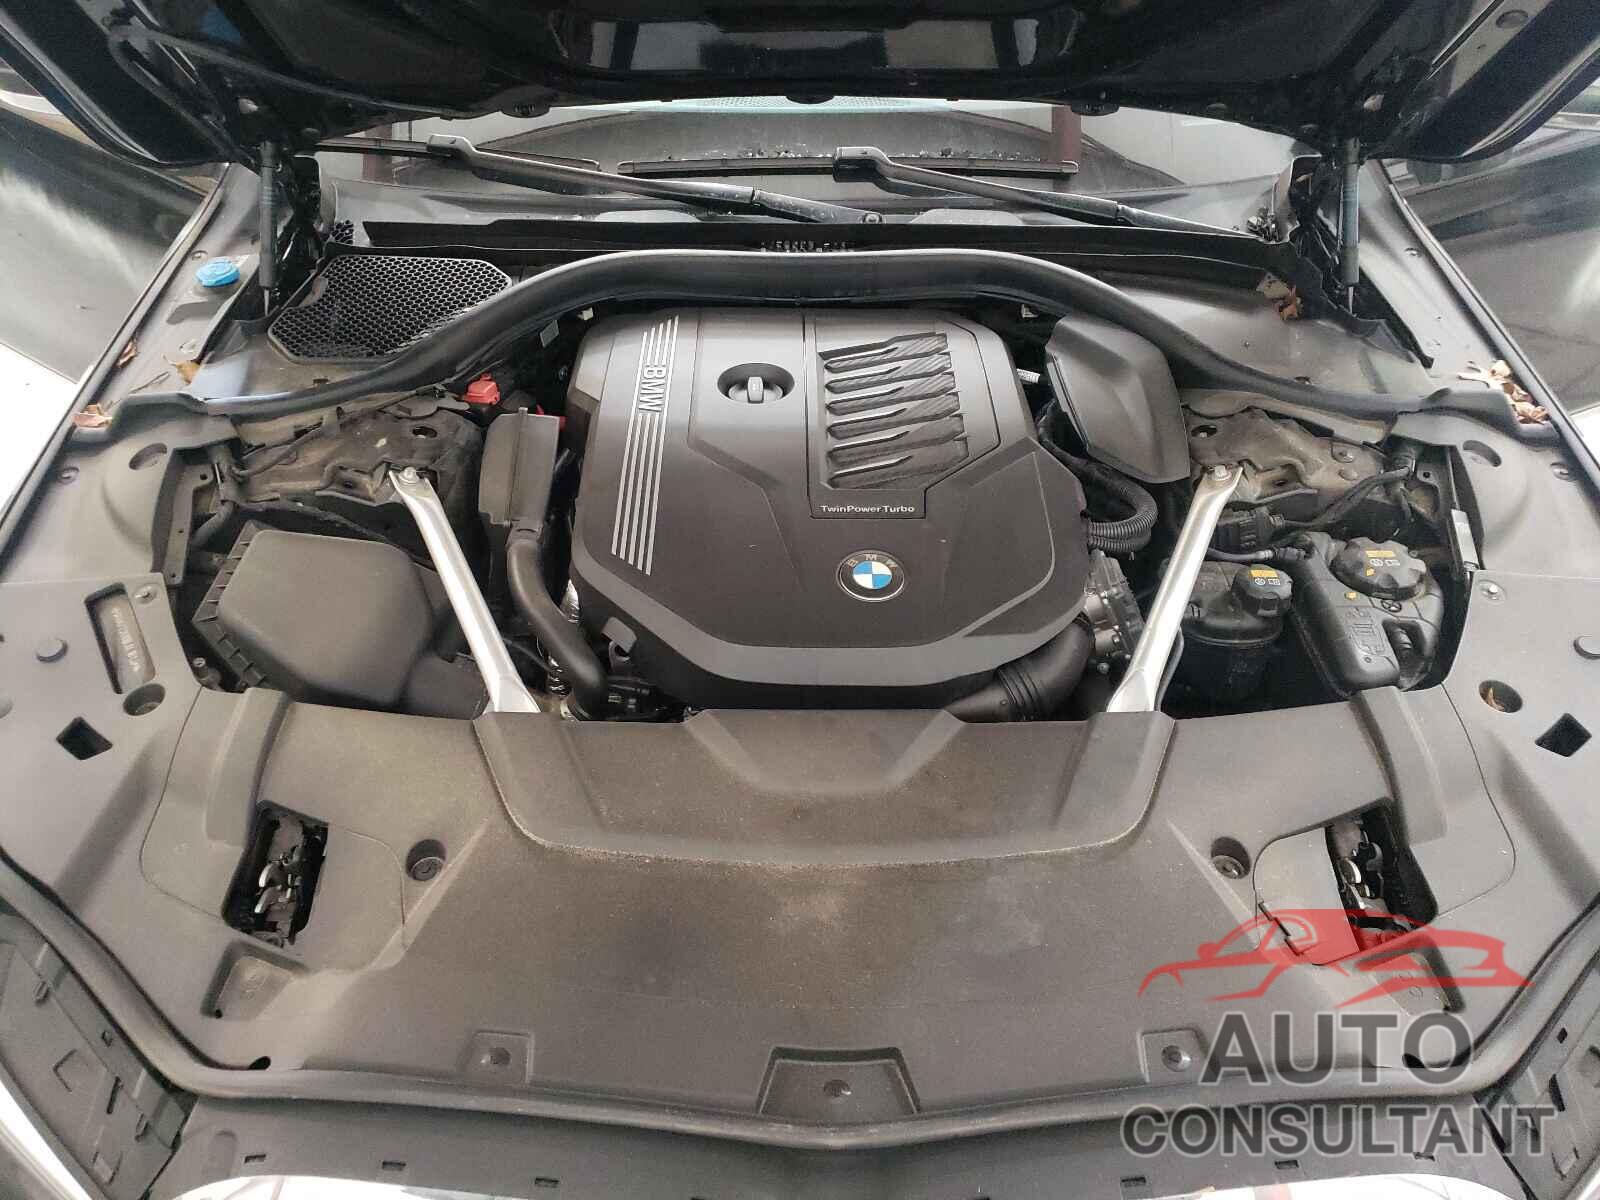 BMW 7 SERIES 2020 - WBA7T2C08LGL18132